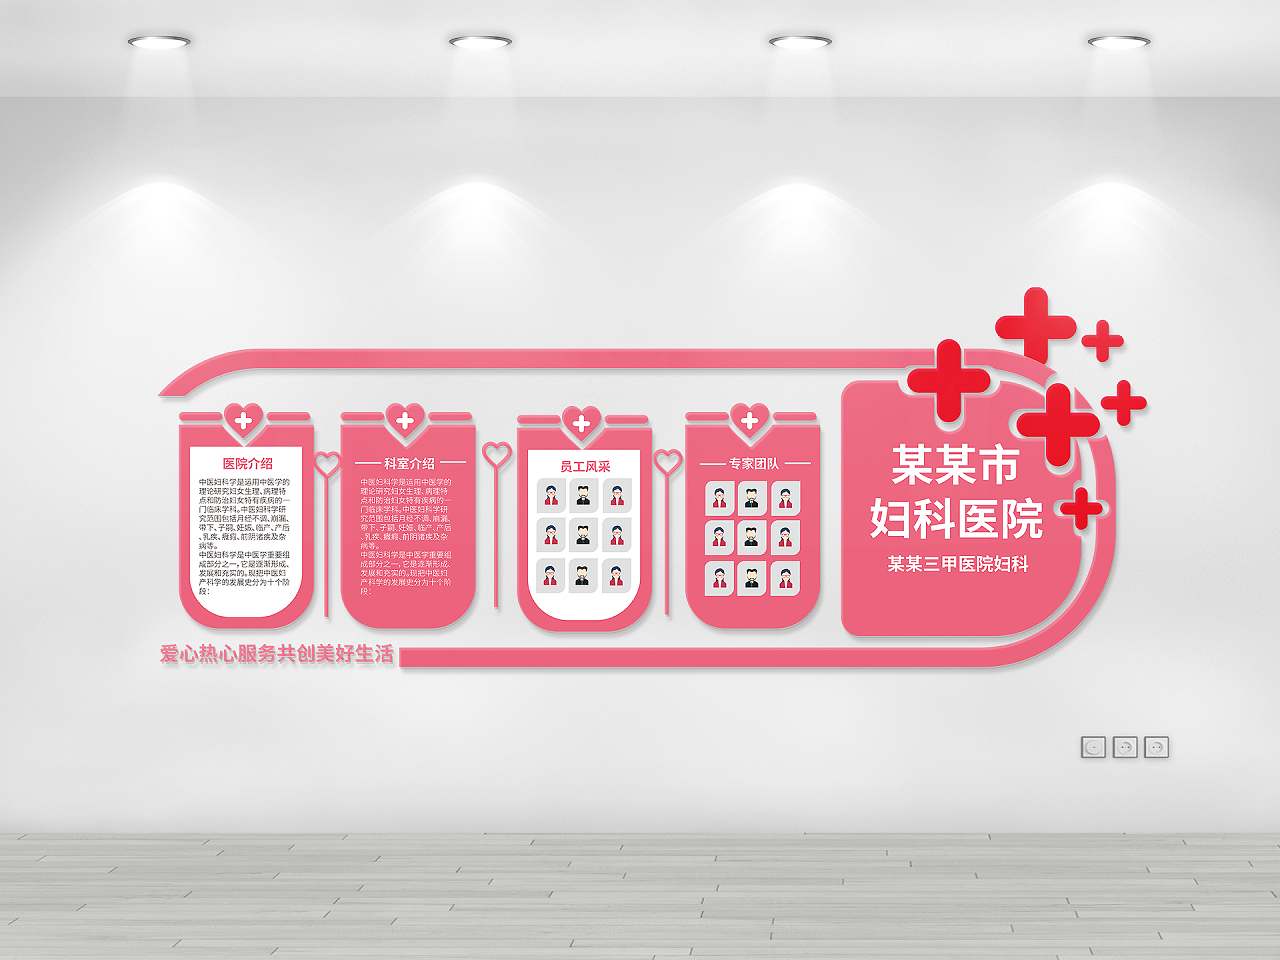 粉红色创意简介妇科医院介绍文化墙设计科室介绍